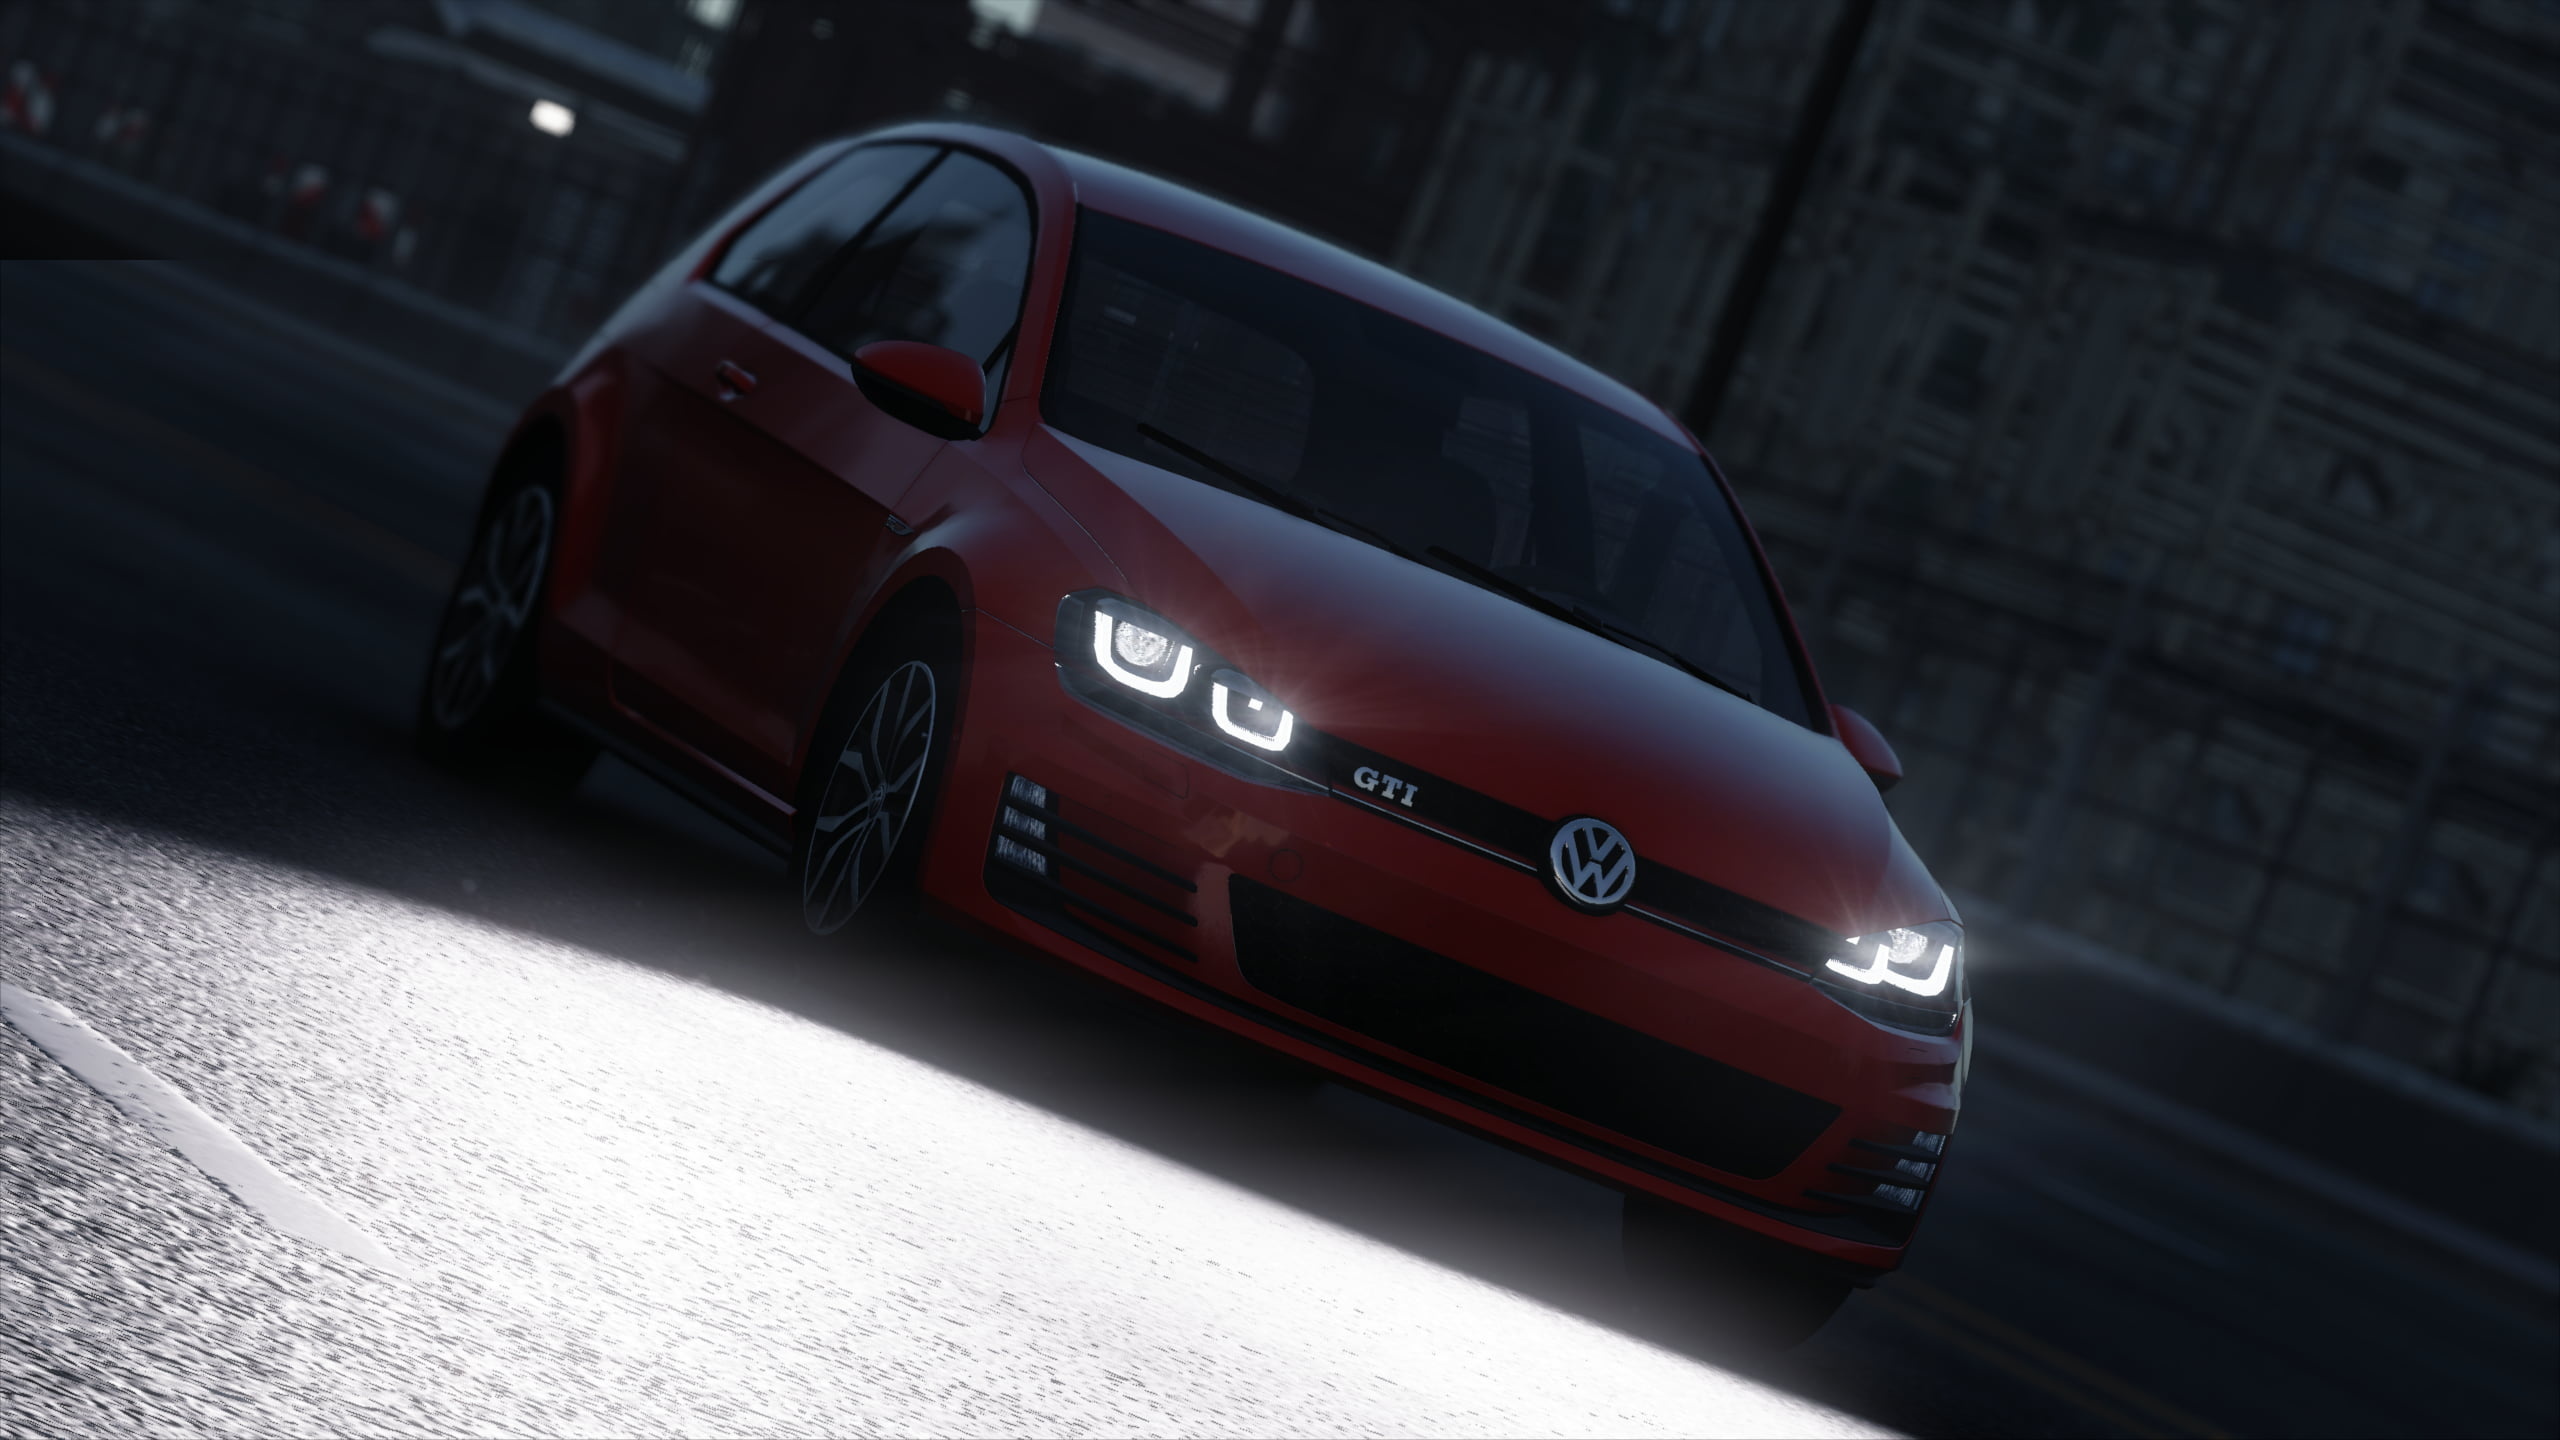 Golf GTI: Red Volkswagen, 3-door hatchback, Video games, The Crew, Car lights. 2560x1440 HD Wallpaper.